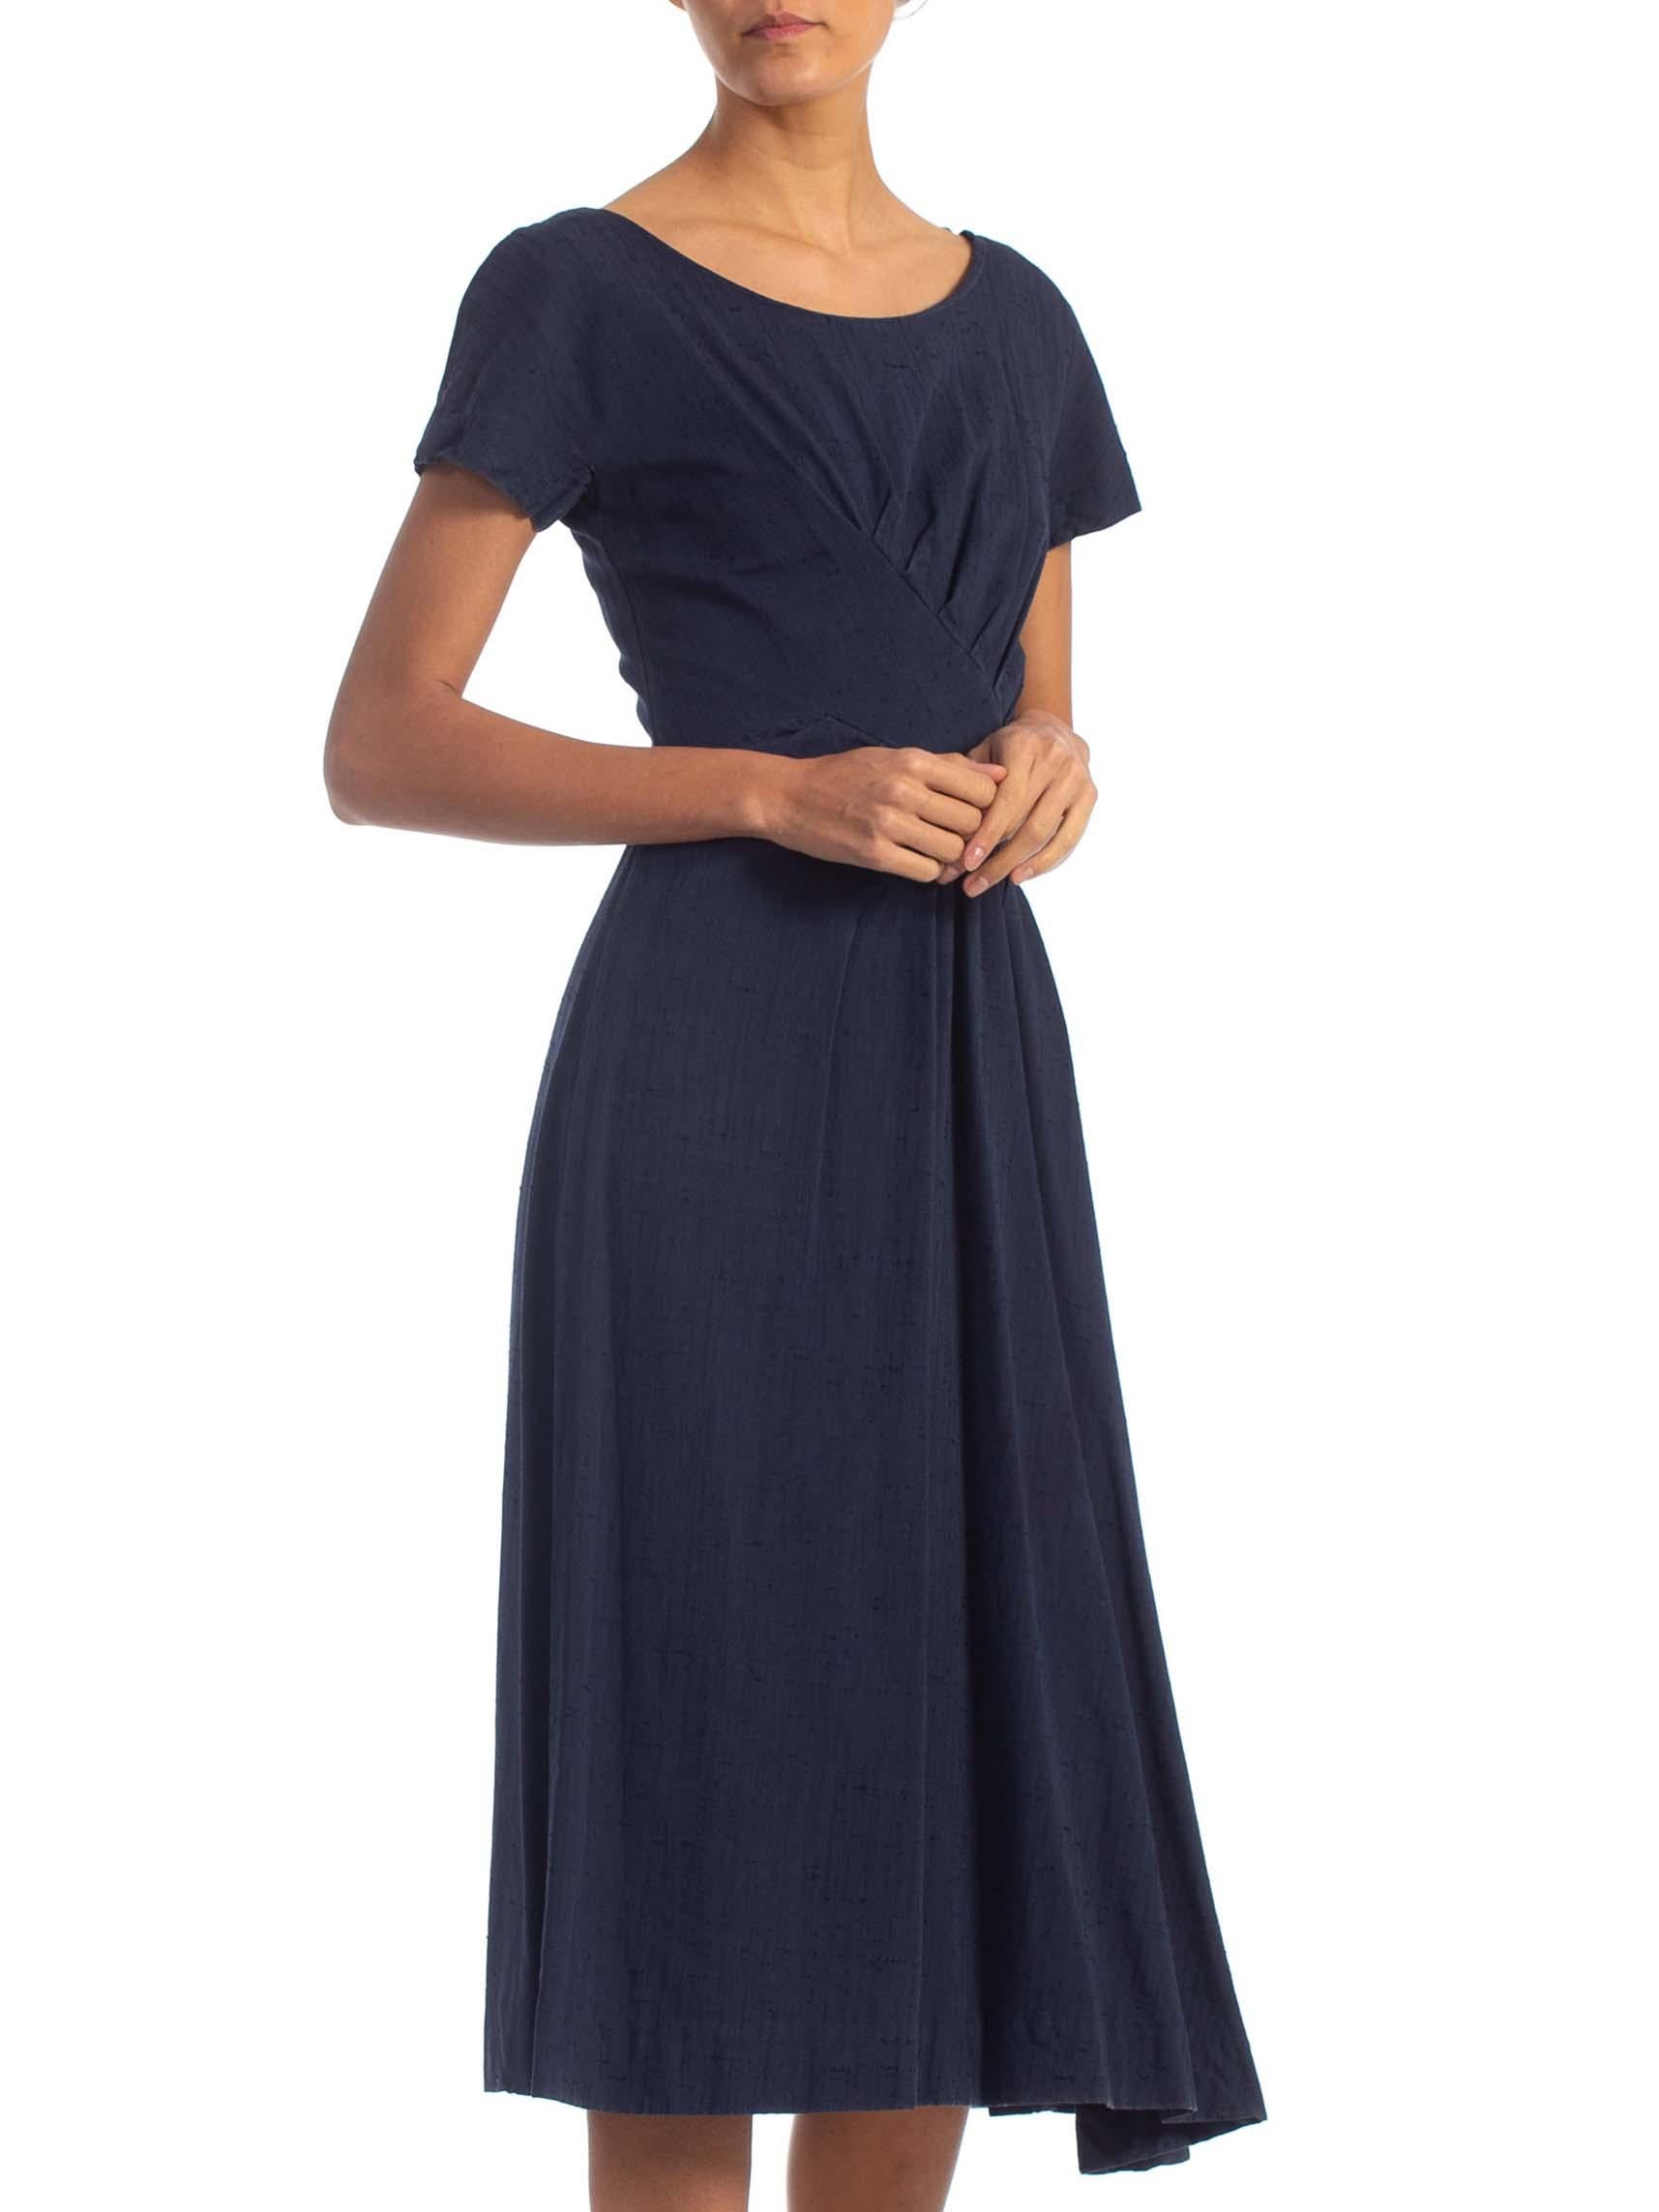 Women's 1950S SUZY PERETTE Navy Blue Cotton Blend Asymmetrical Drape Fit & Flare Dress